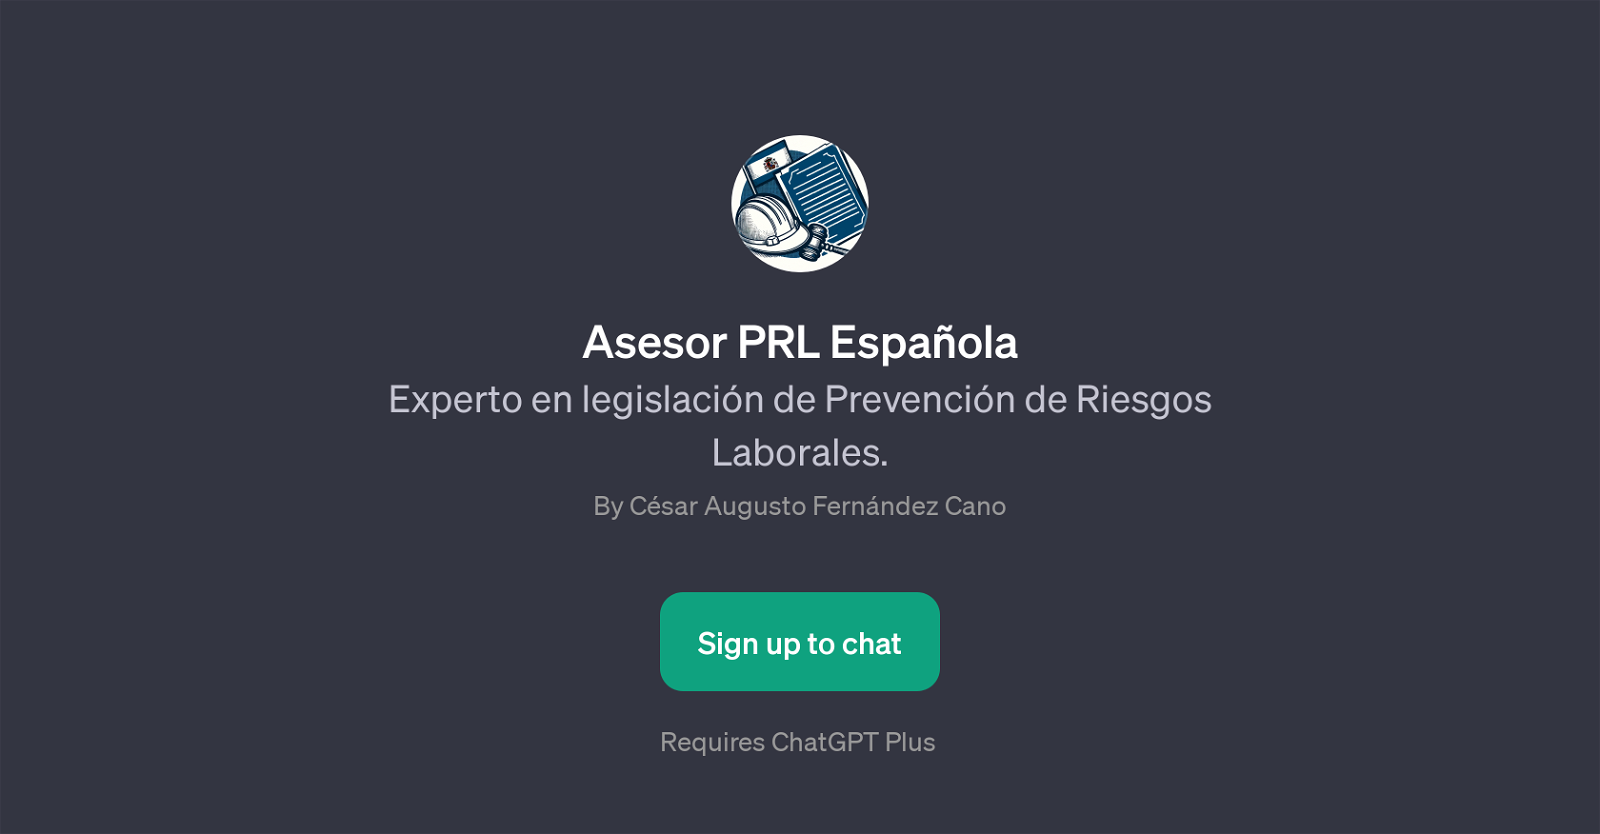 Asesor PRL Espaola website